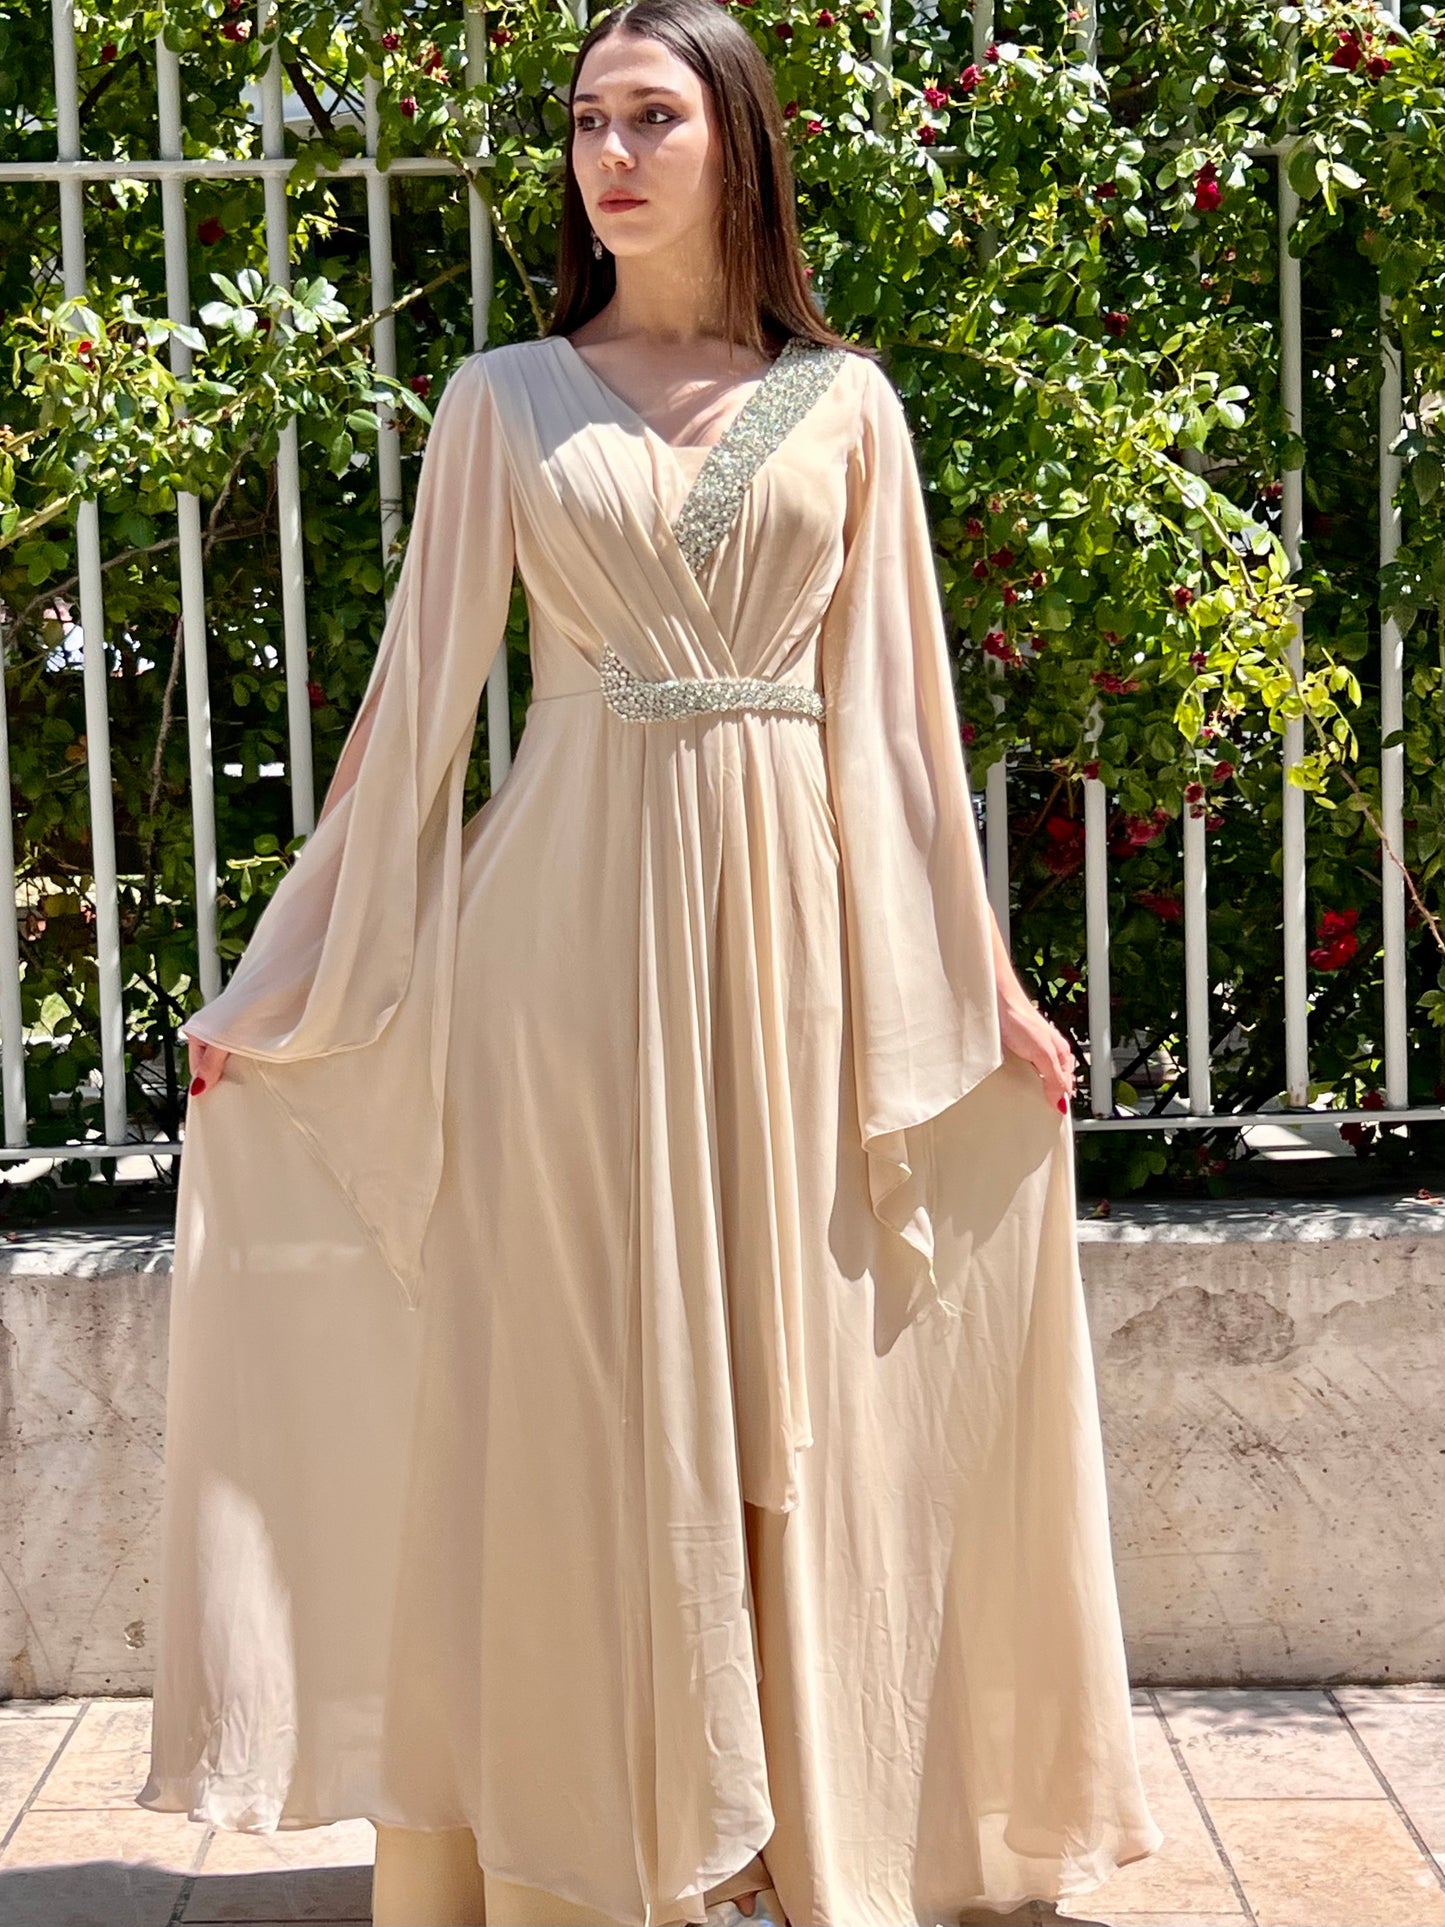 Robe de soirée "Besançon" sur www.amircouture.com, une création qui incarne le raffinement et le charme intemporel.